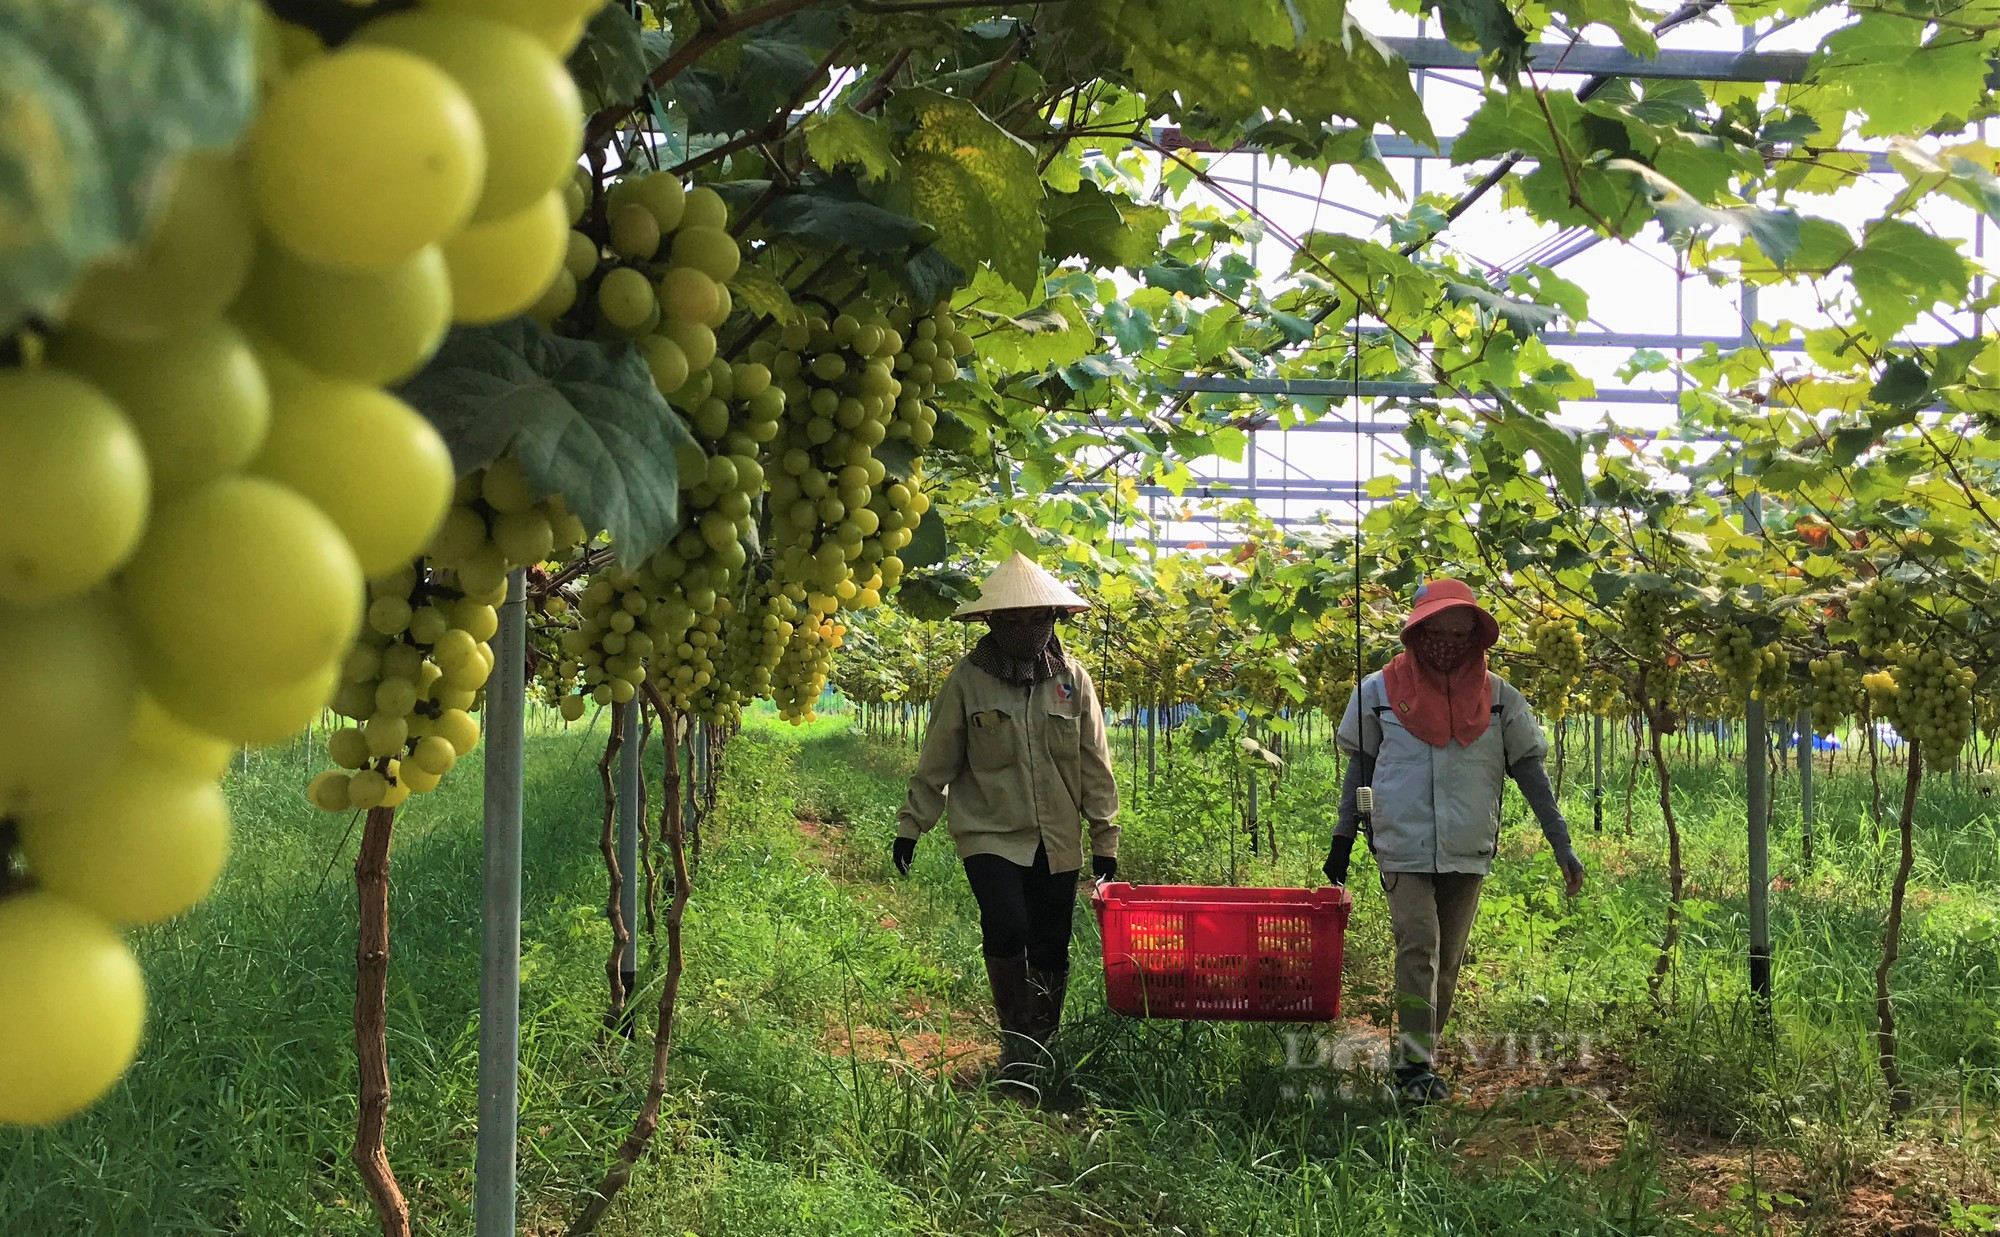 Sản xuất nông sản sạch ở Nghệ An: Trang trại công nghệ cao trồng đủ thứ rau, củ, quả sạch - Ảnh 1.